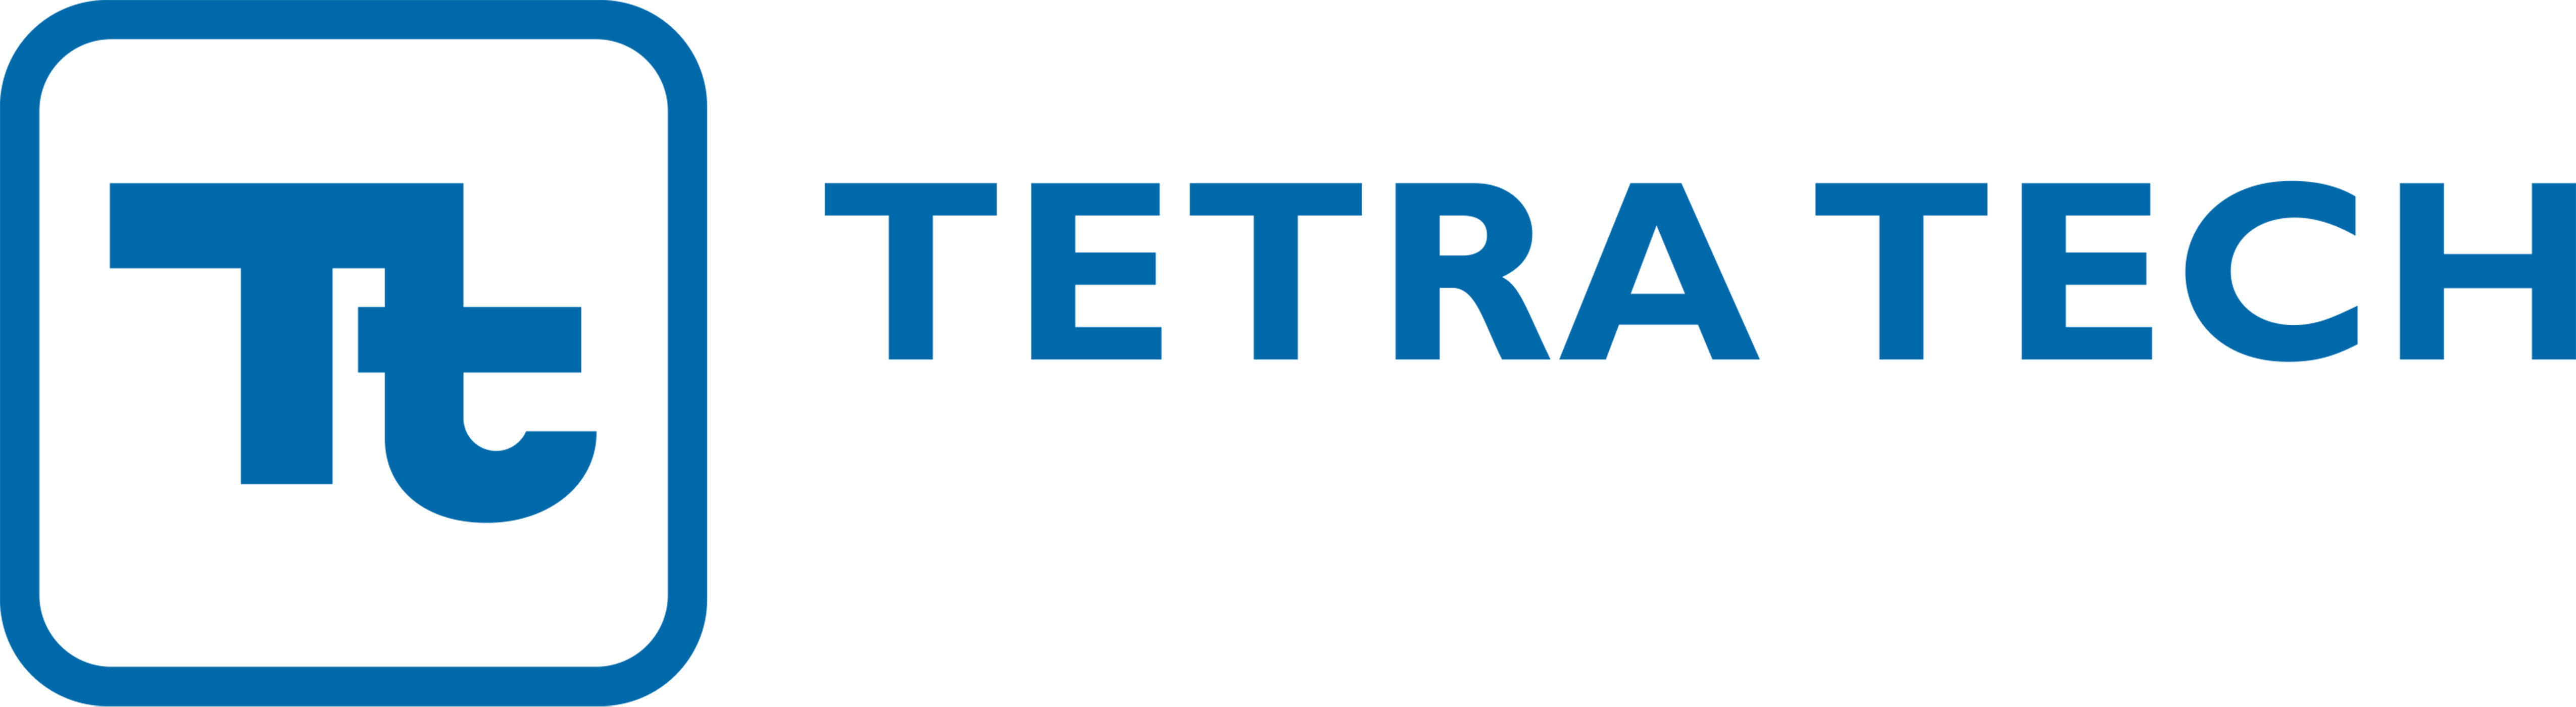 TetraTech